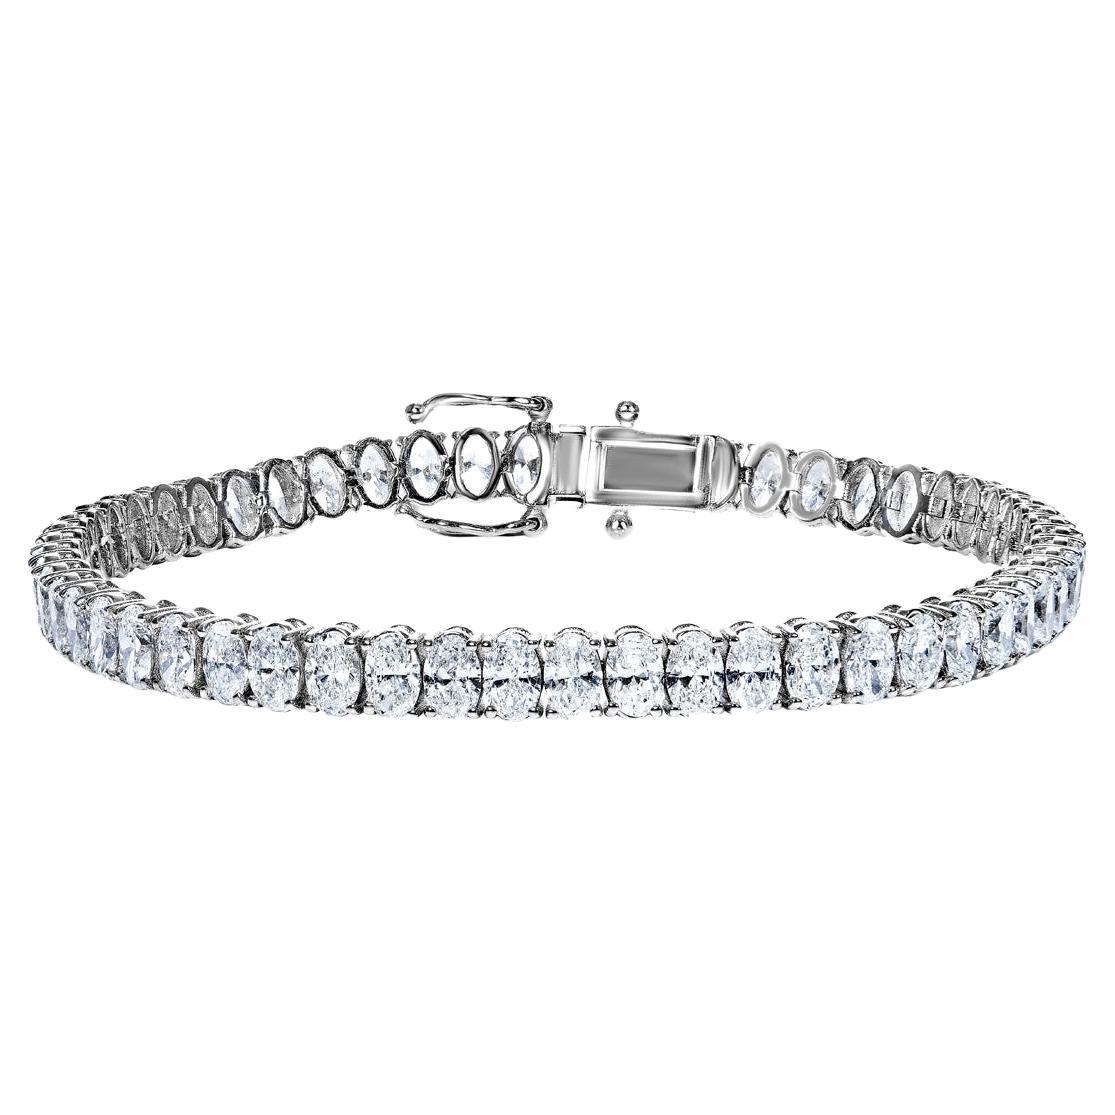 Bracelet tennis à une rangée de diamants taille ovale de 11 carats certifiés